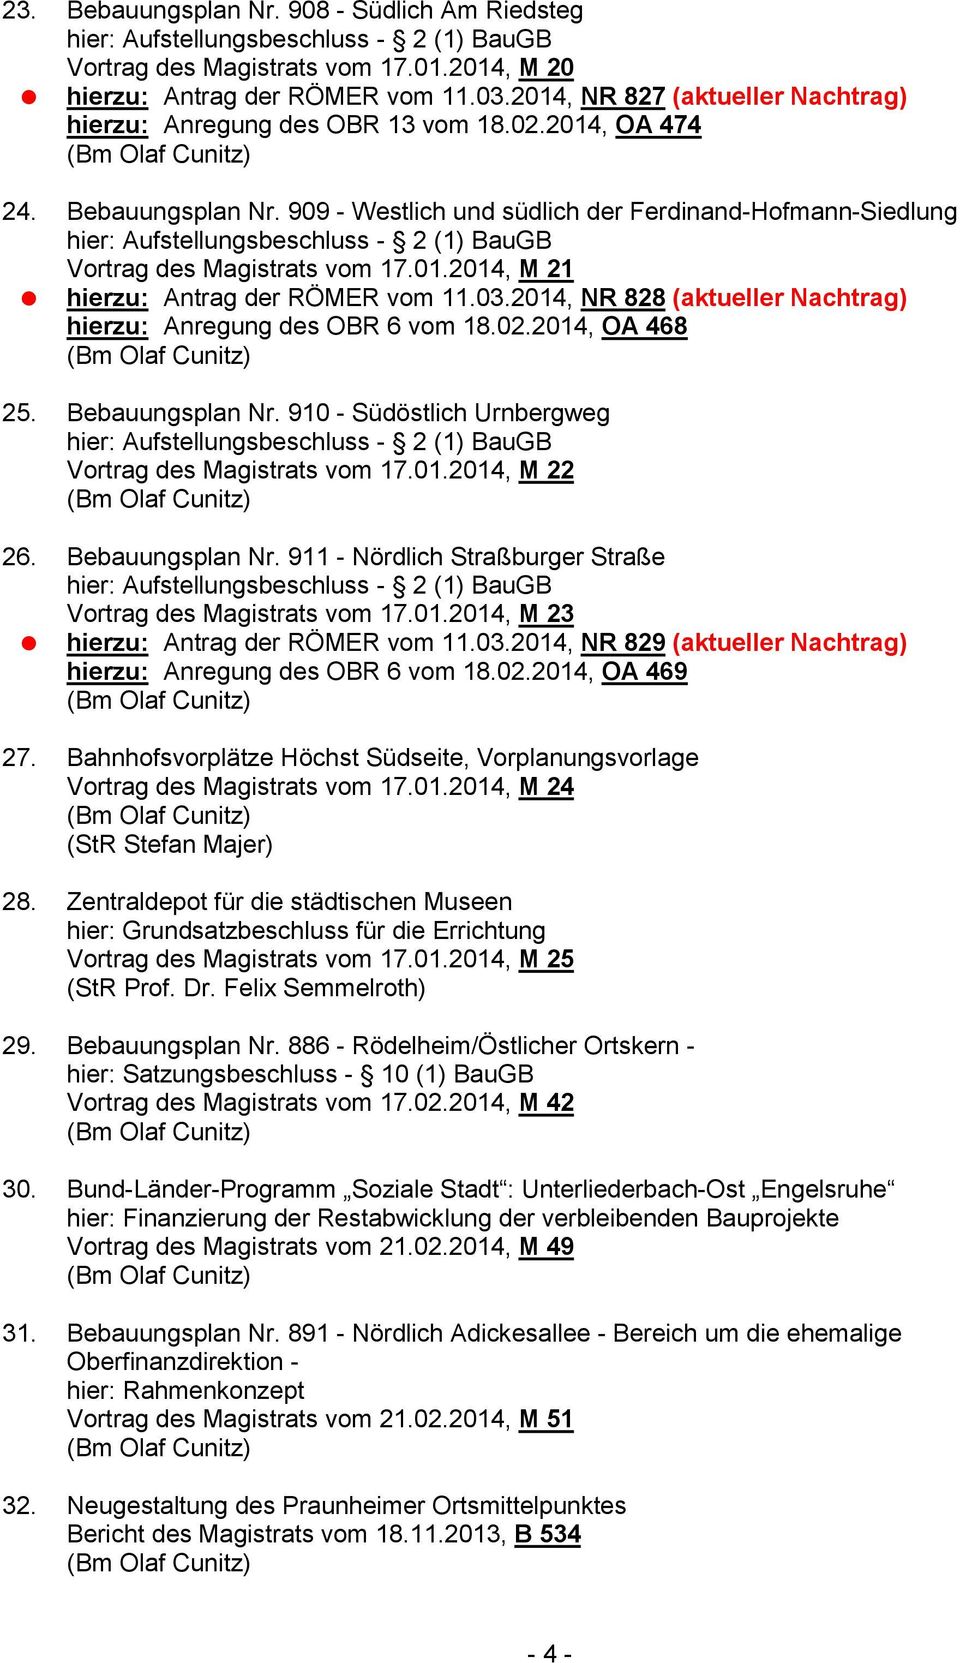 2014, NR 828 (aktueller Nachtrag) hierzu: Anregung des OBR 6 vom 18.02.2014, OA 468 25. Bebauungsplan Nr. 910 - Südöstlich Urnbergweg Vortrag des Magistrats vom 17.01.2014, M 22 26. Bebauungsplan Nr. 911 - Nördlich Straßburger Straße Vortrag des Magistrats vom 17.